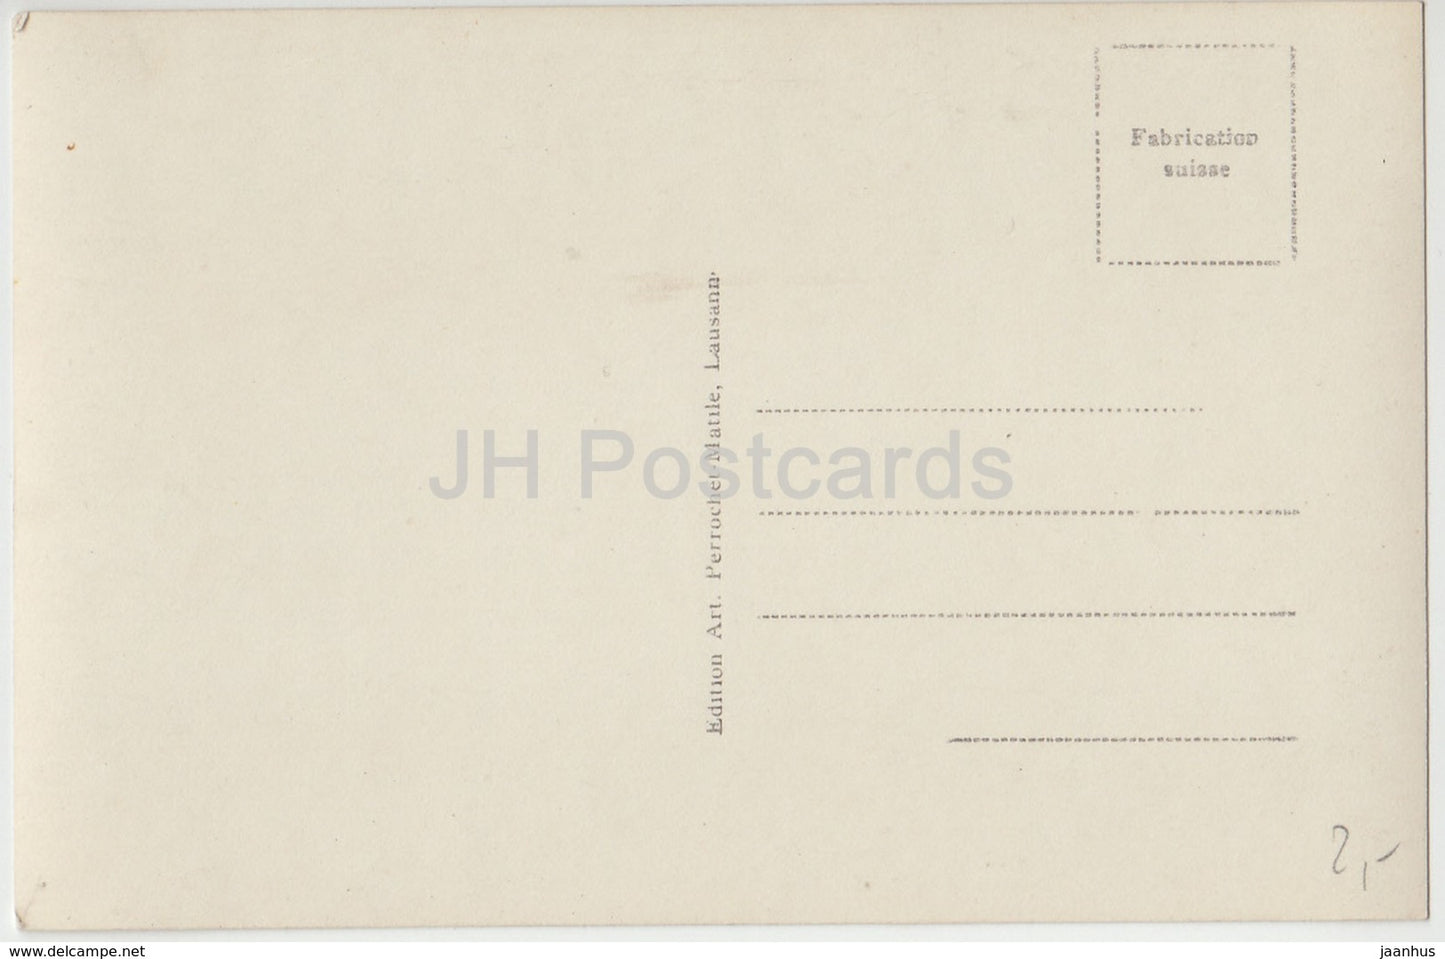 Le Bouveret et le Gramont - 2296 - Switzerland - old postcard - unused